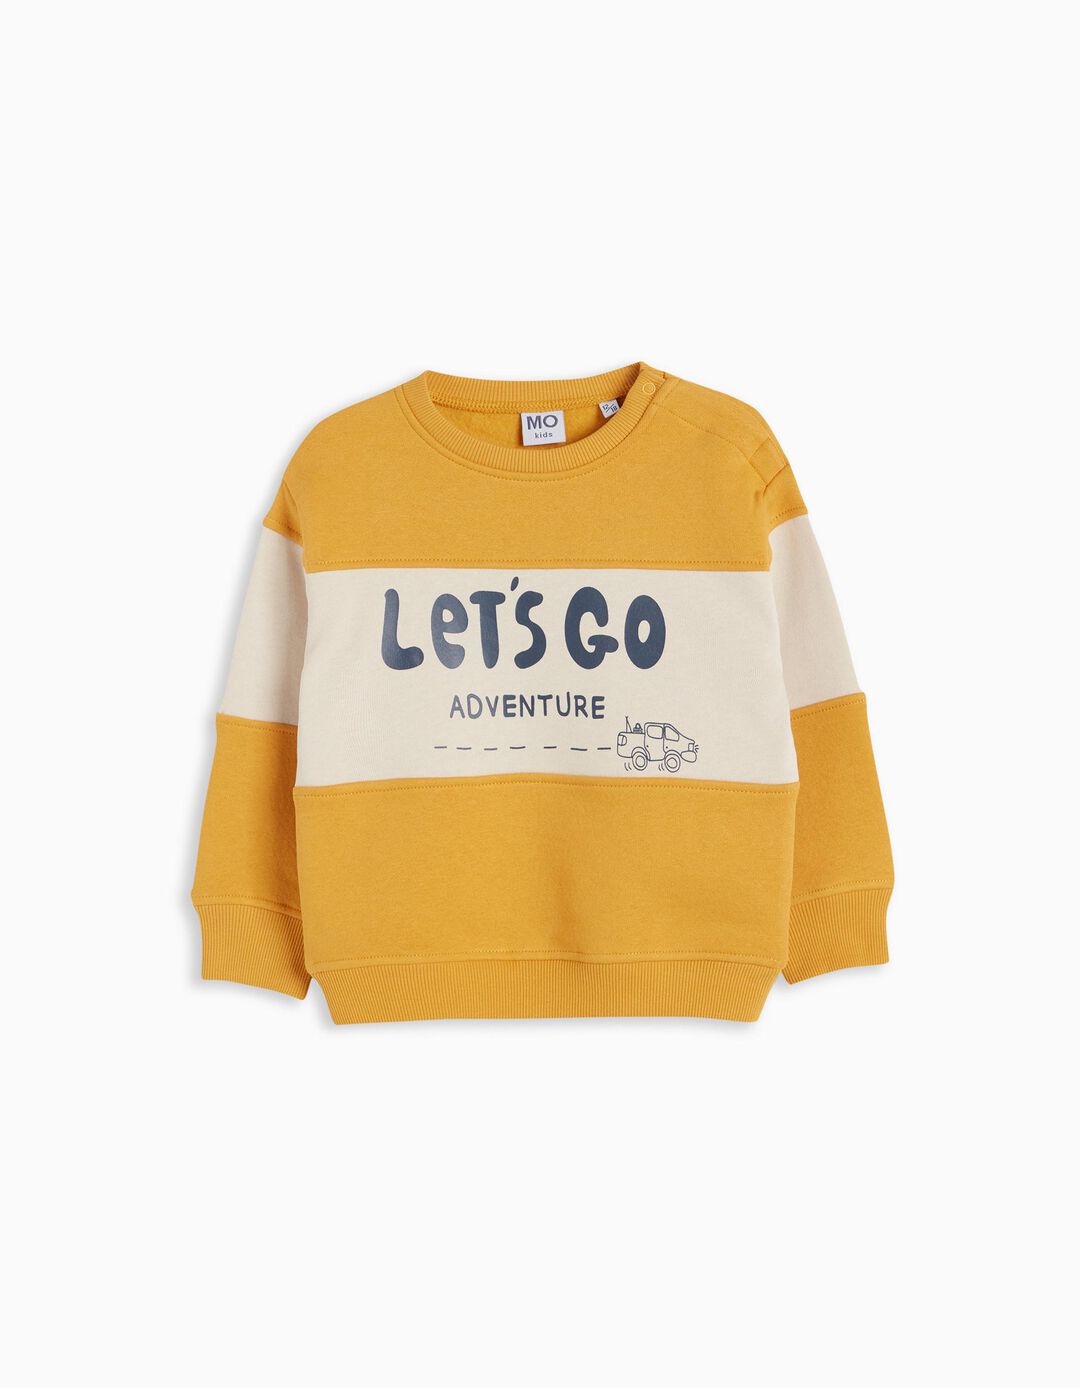 Sweatshirt de Felpa, Bebé Menino, Amarelo